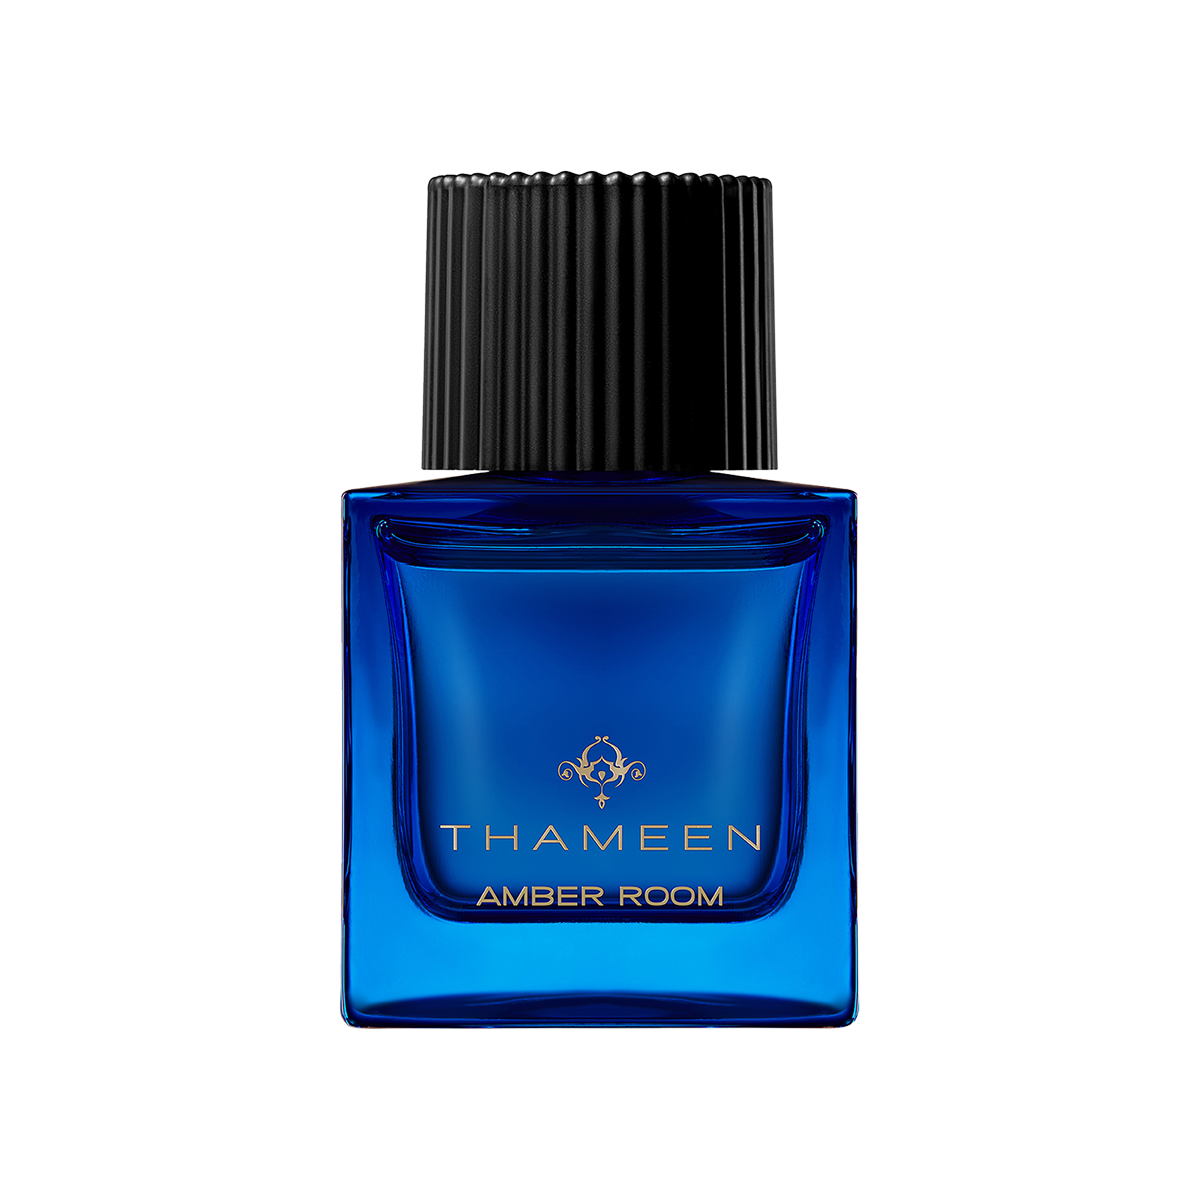 Thameen London - Amber Room Eau de Parfum